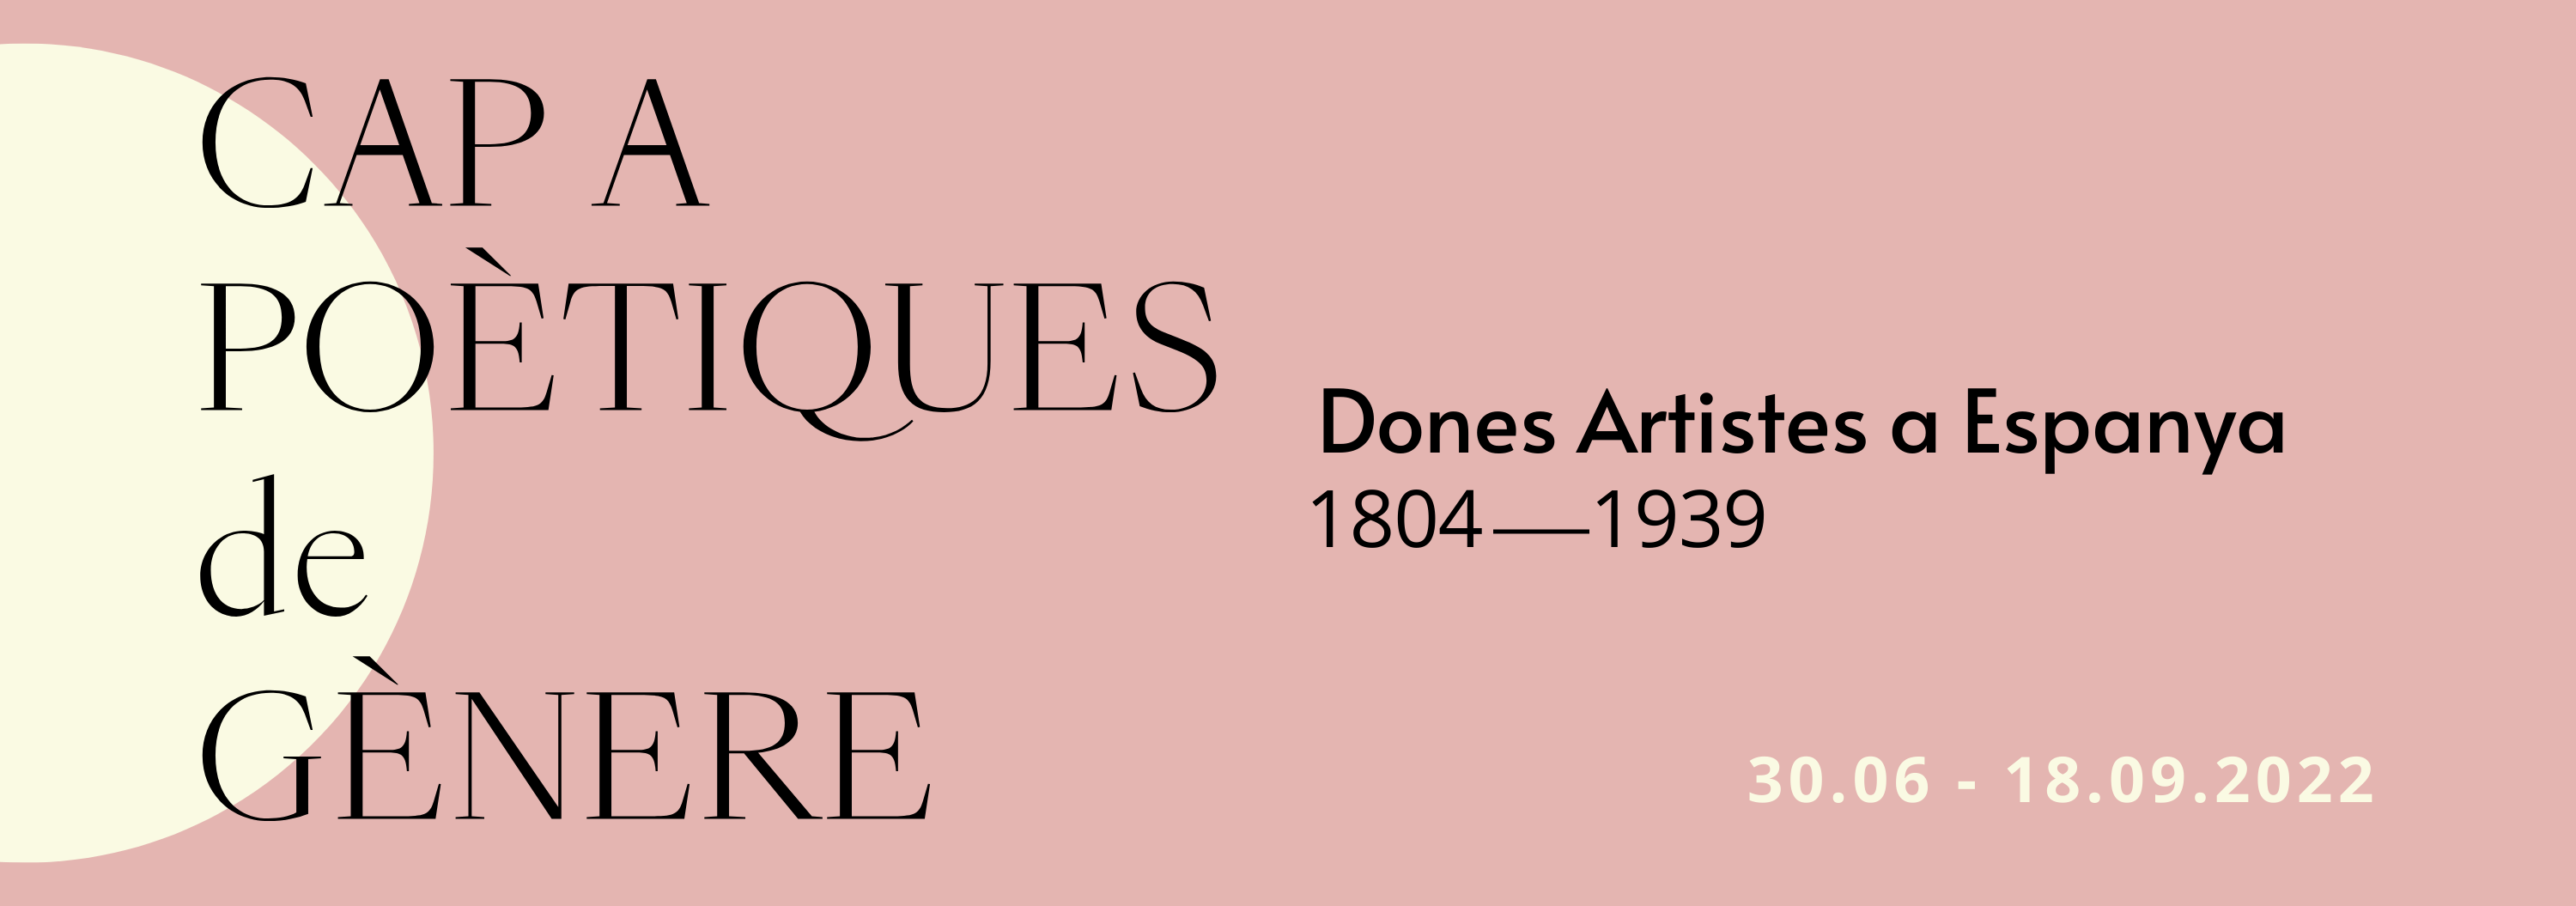 Cap a poètiques de gènere. Dones artistes a Espanya, 1804-1939